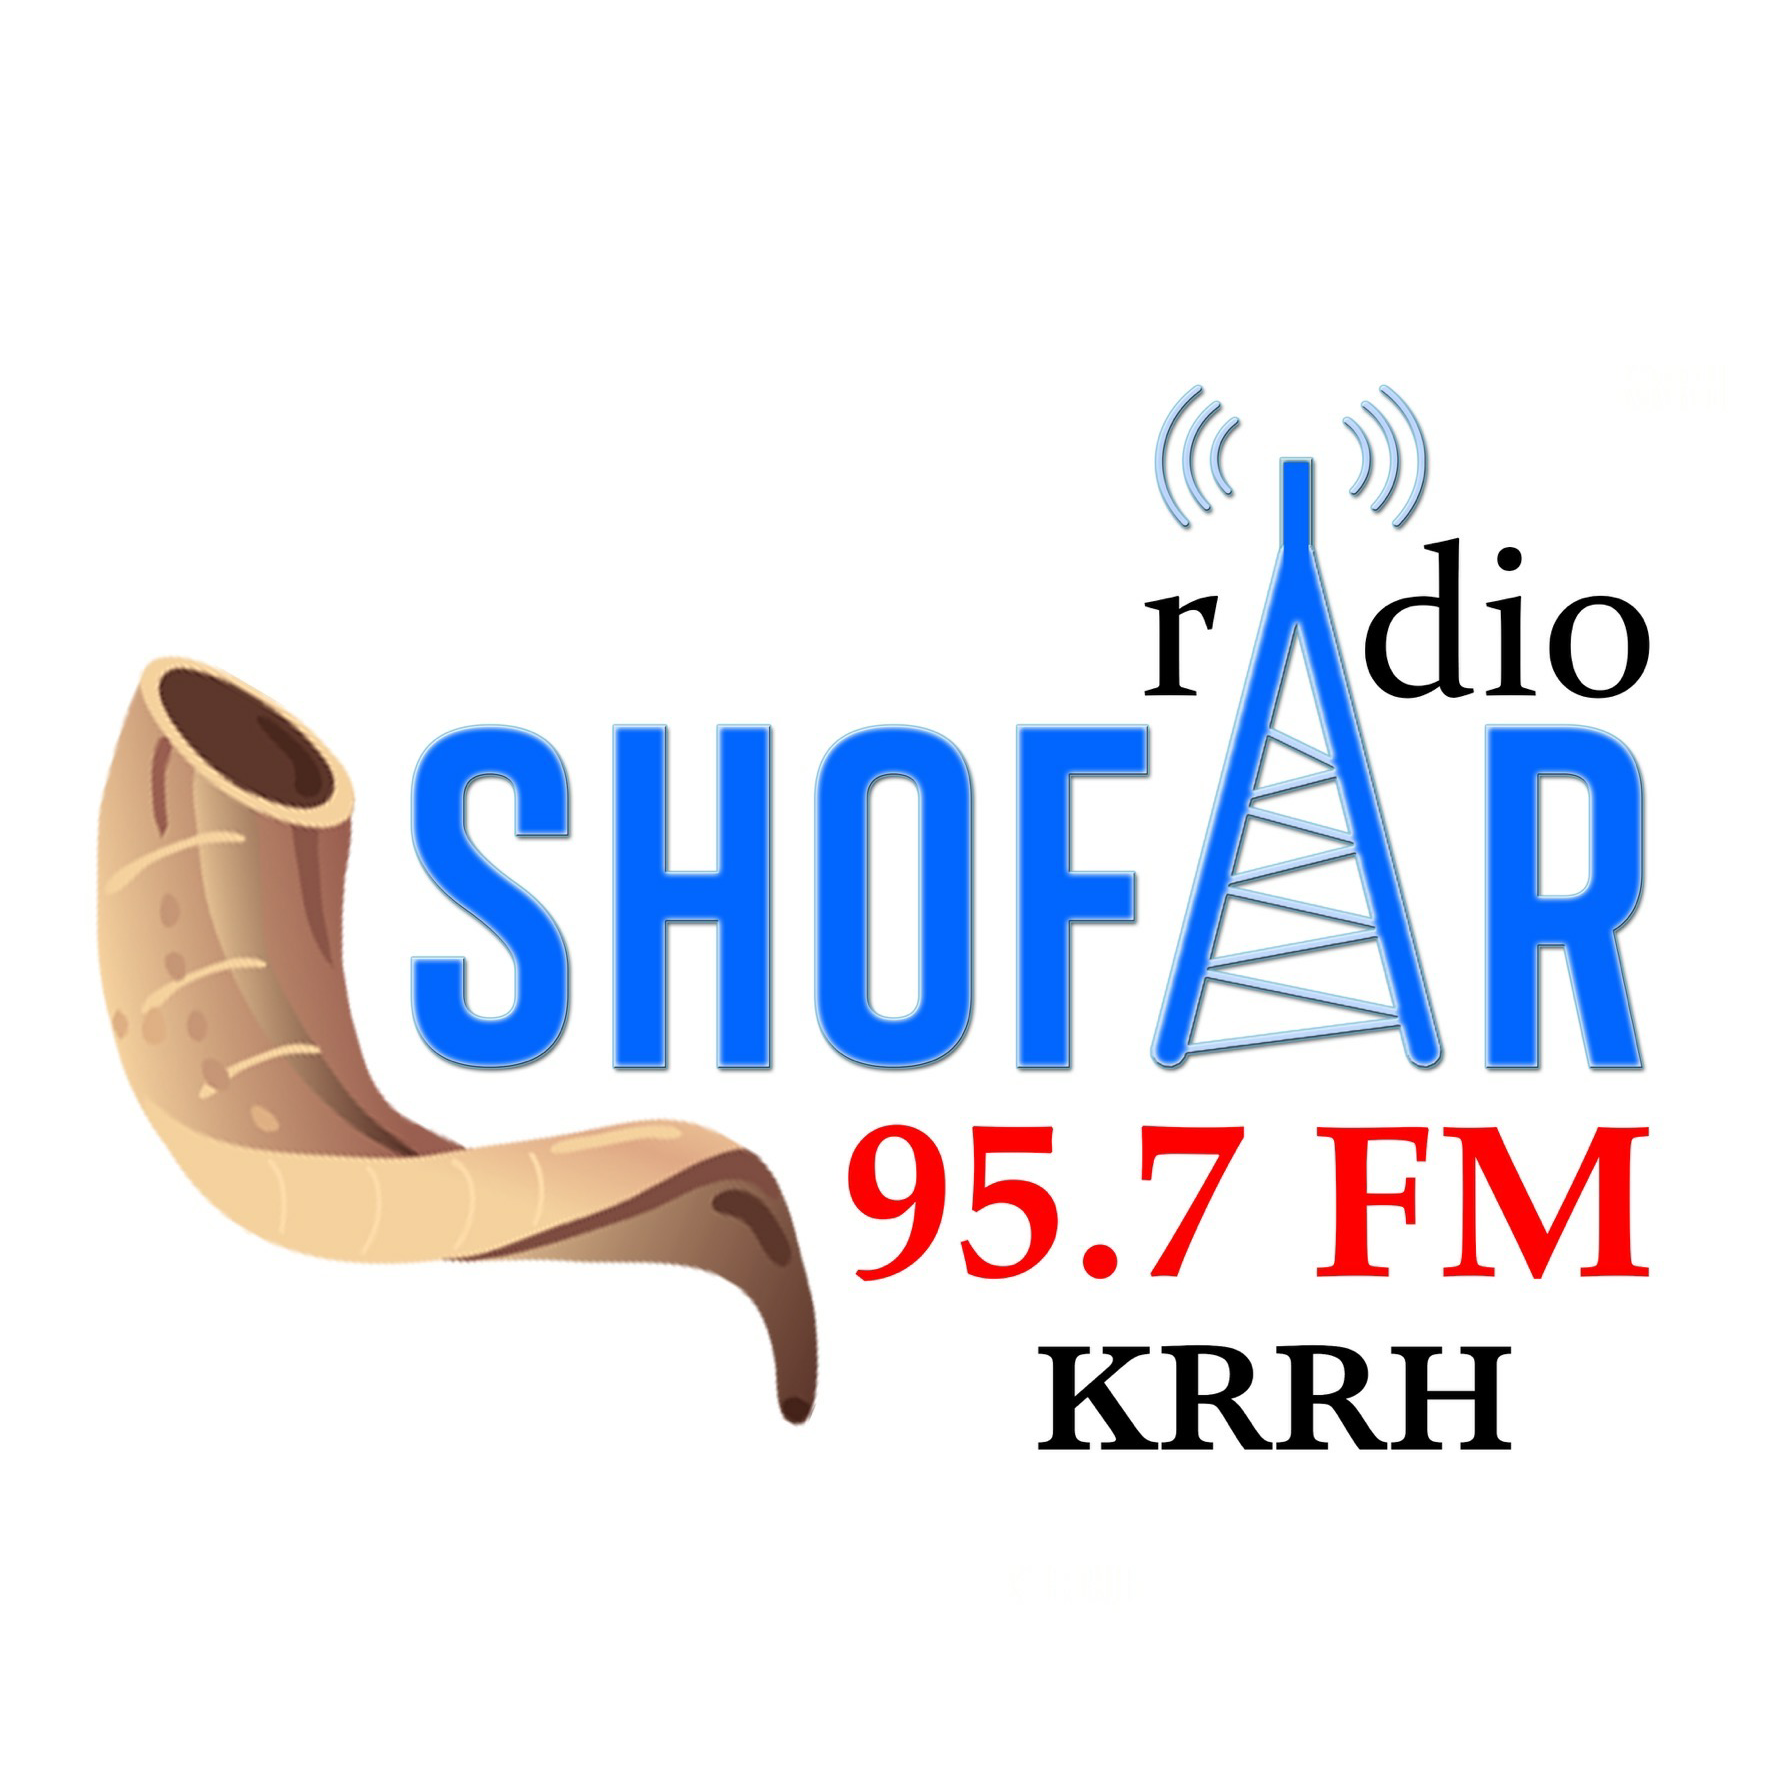 Radio Shofar 95.7fm